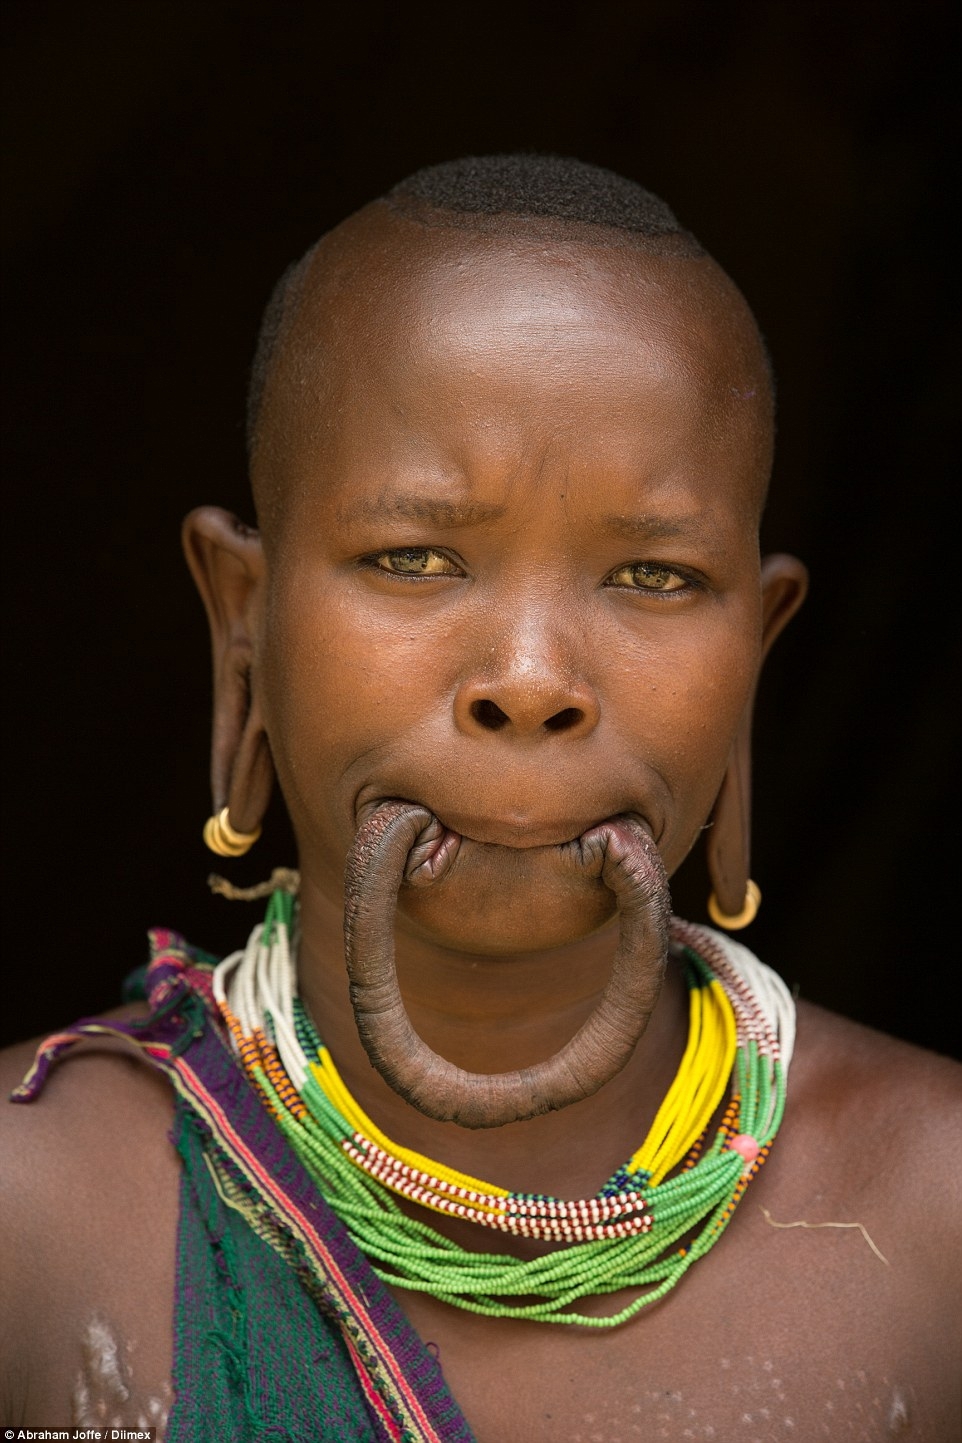 Обладательница самого большого диска для губ из Эфиопии